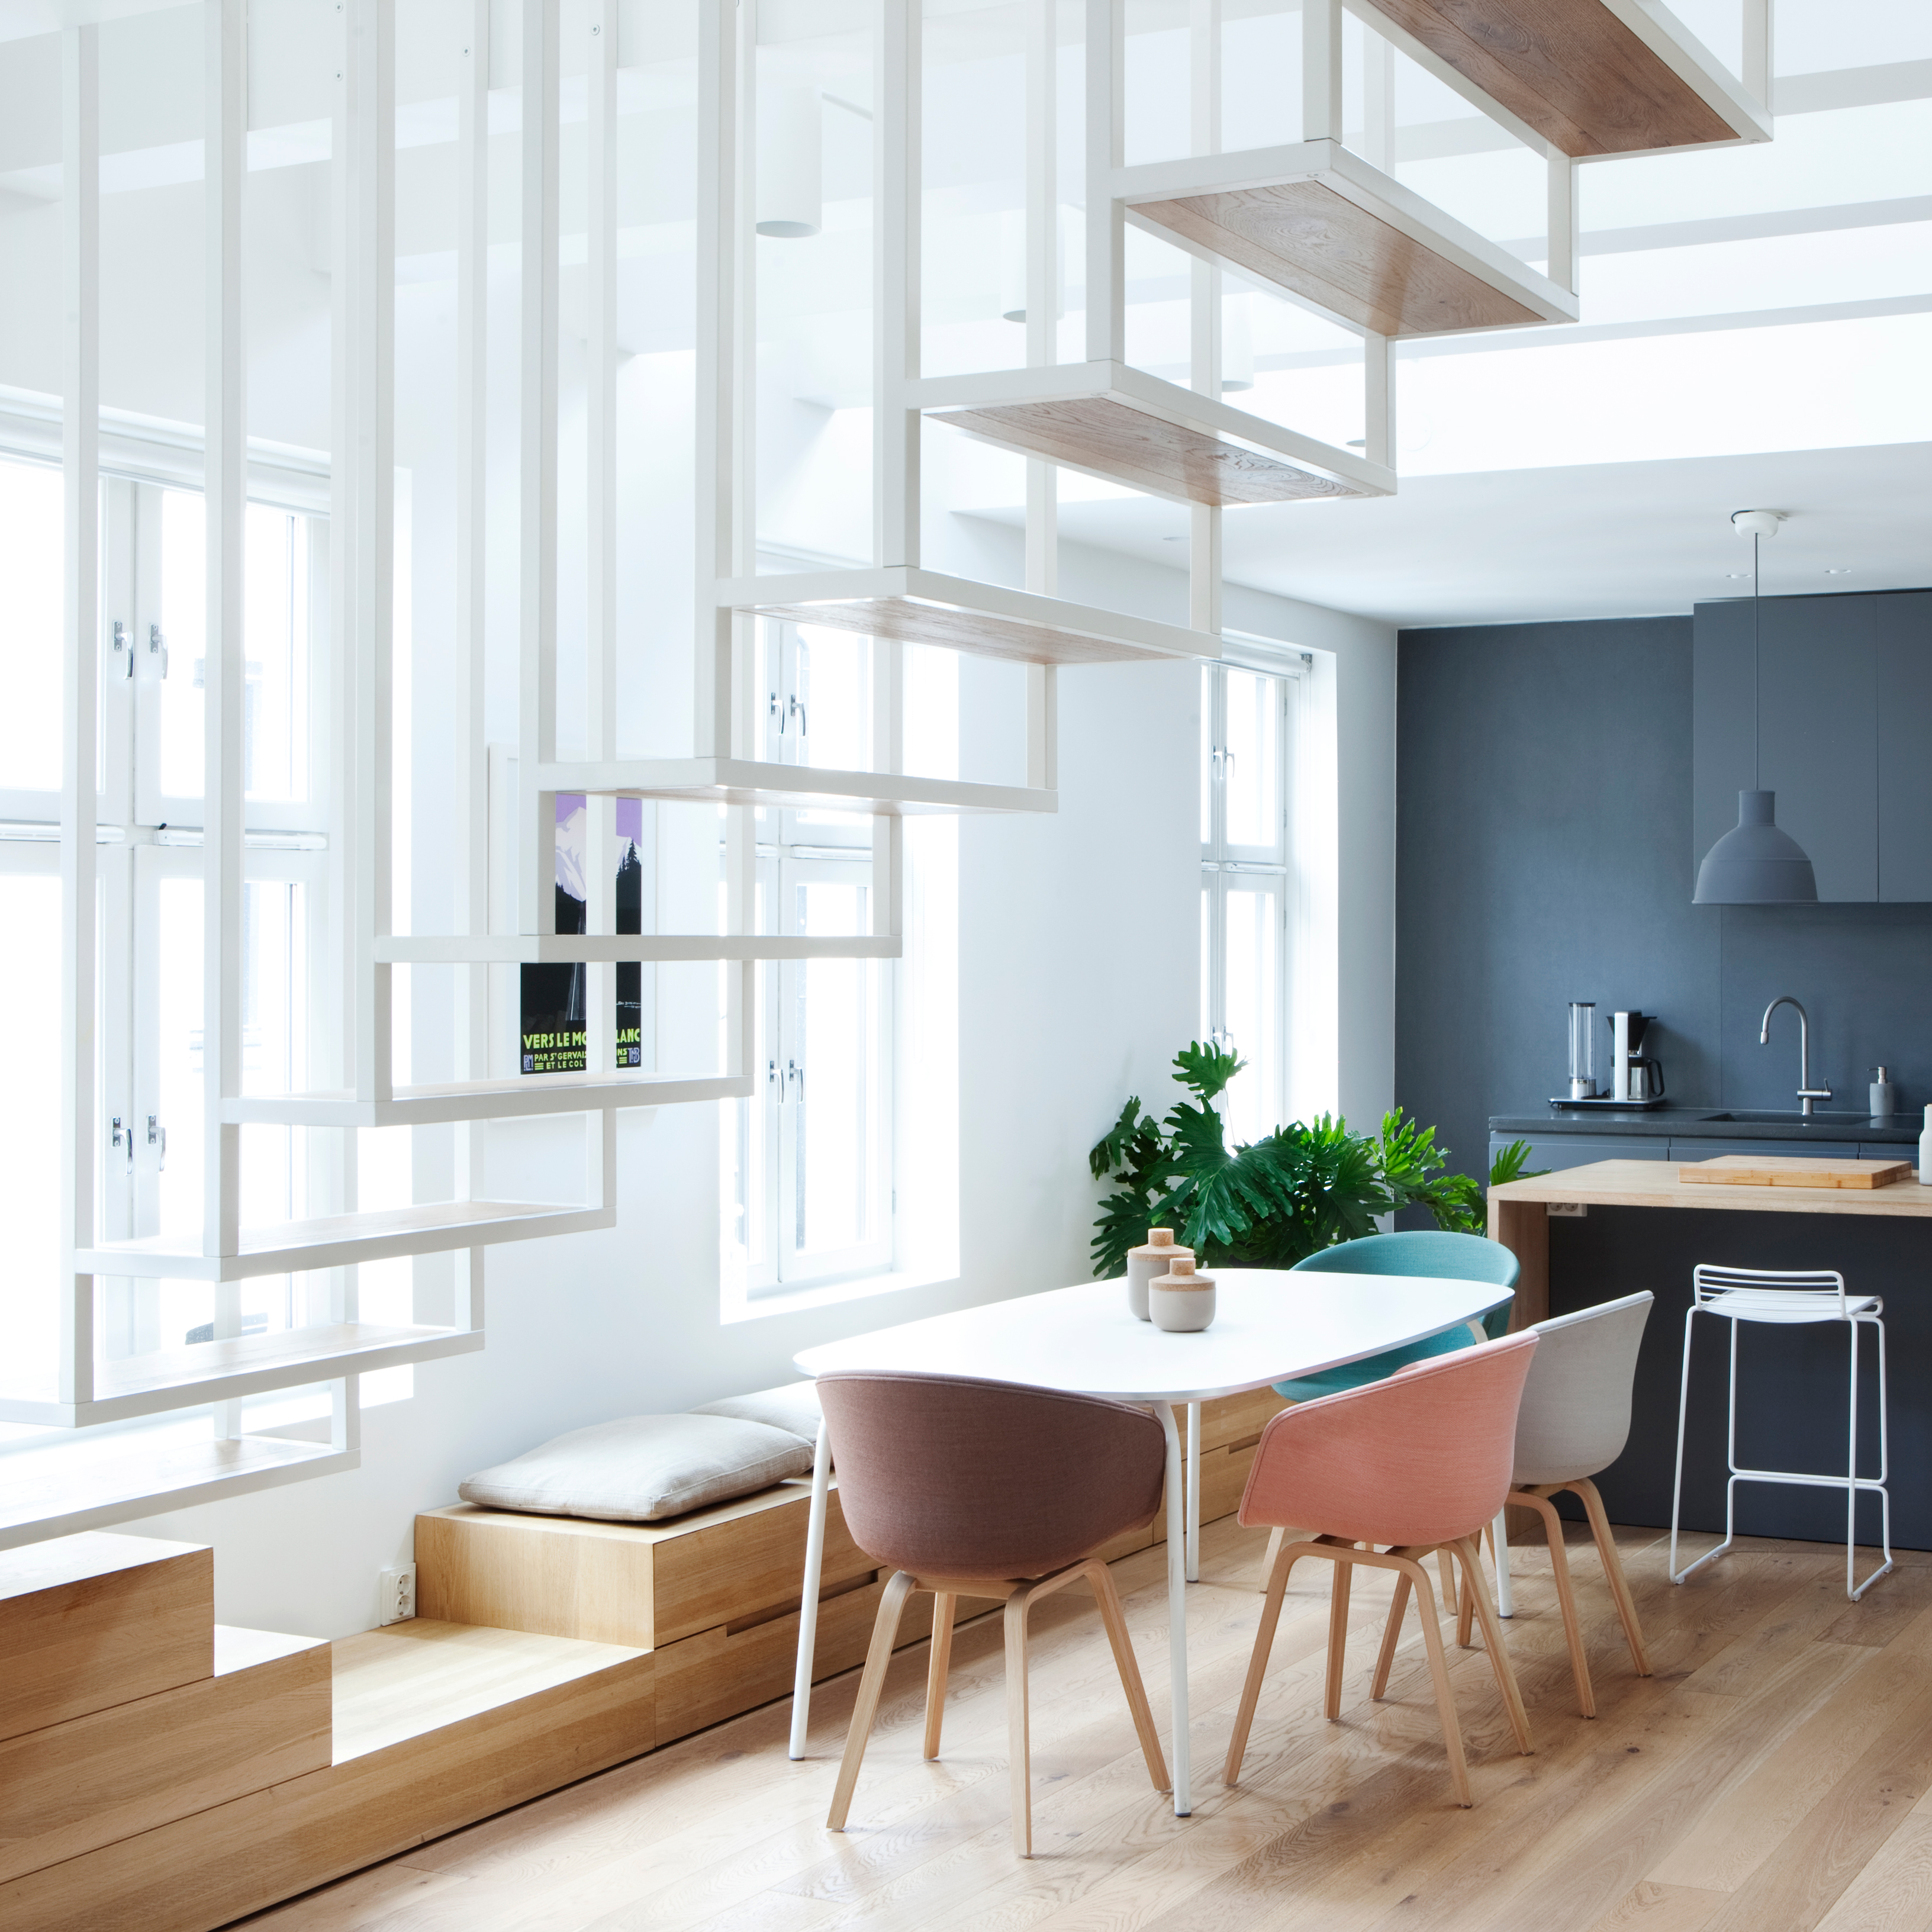 10 Popular Scandinavian Home Interiors On Dezeen S Pinterest Boards